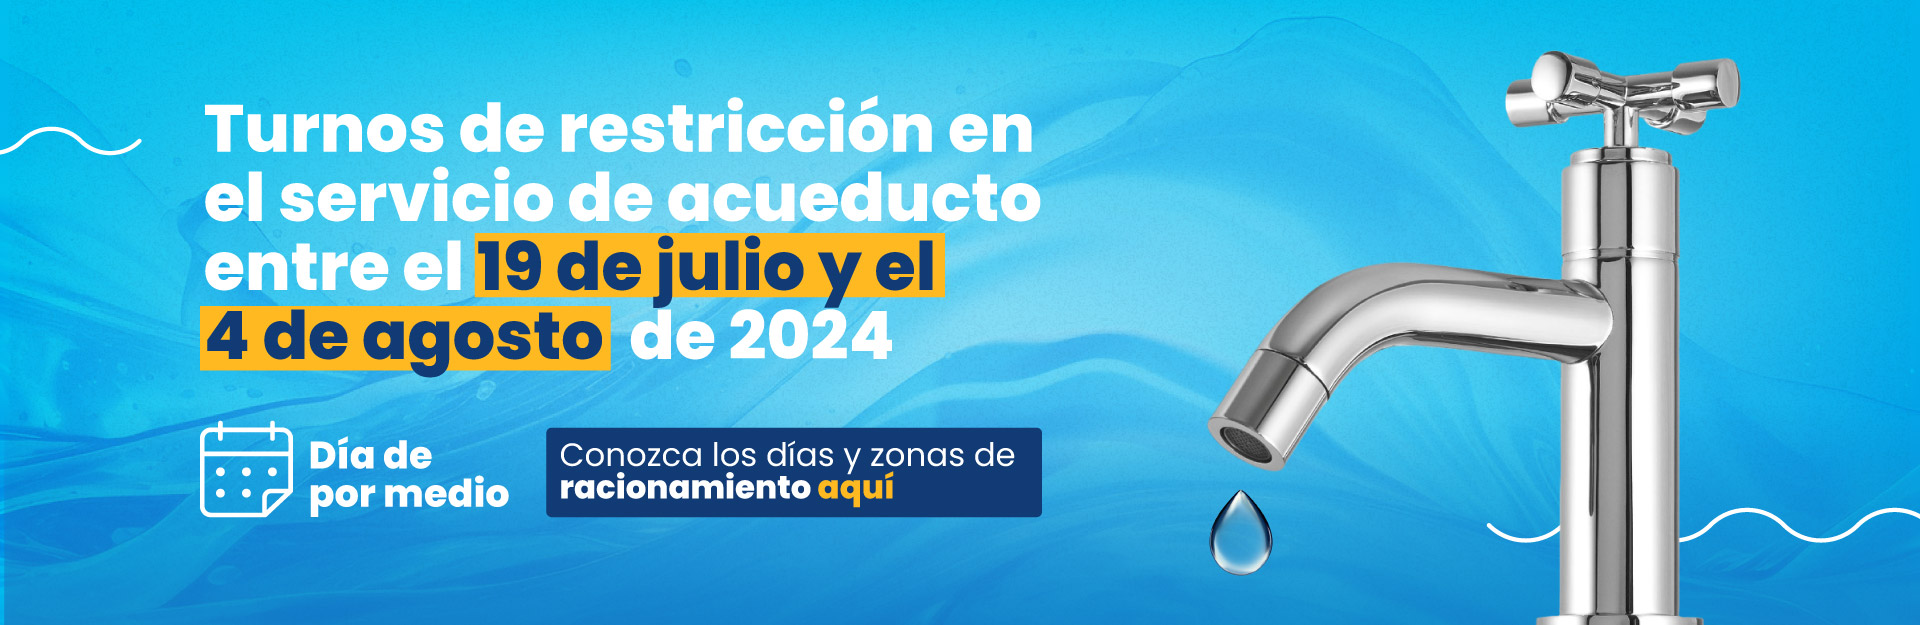 Turnos de restricción en el servicio de acueducto entre el 19 de julio y el 4 de agosto de 2024 | día de por medio